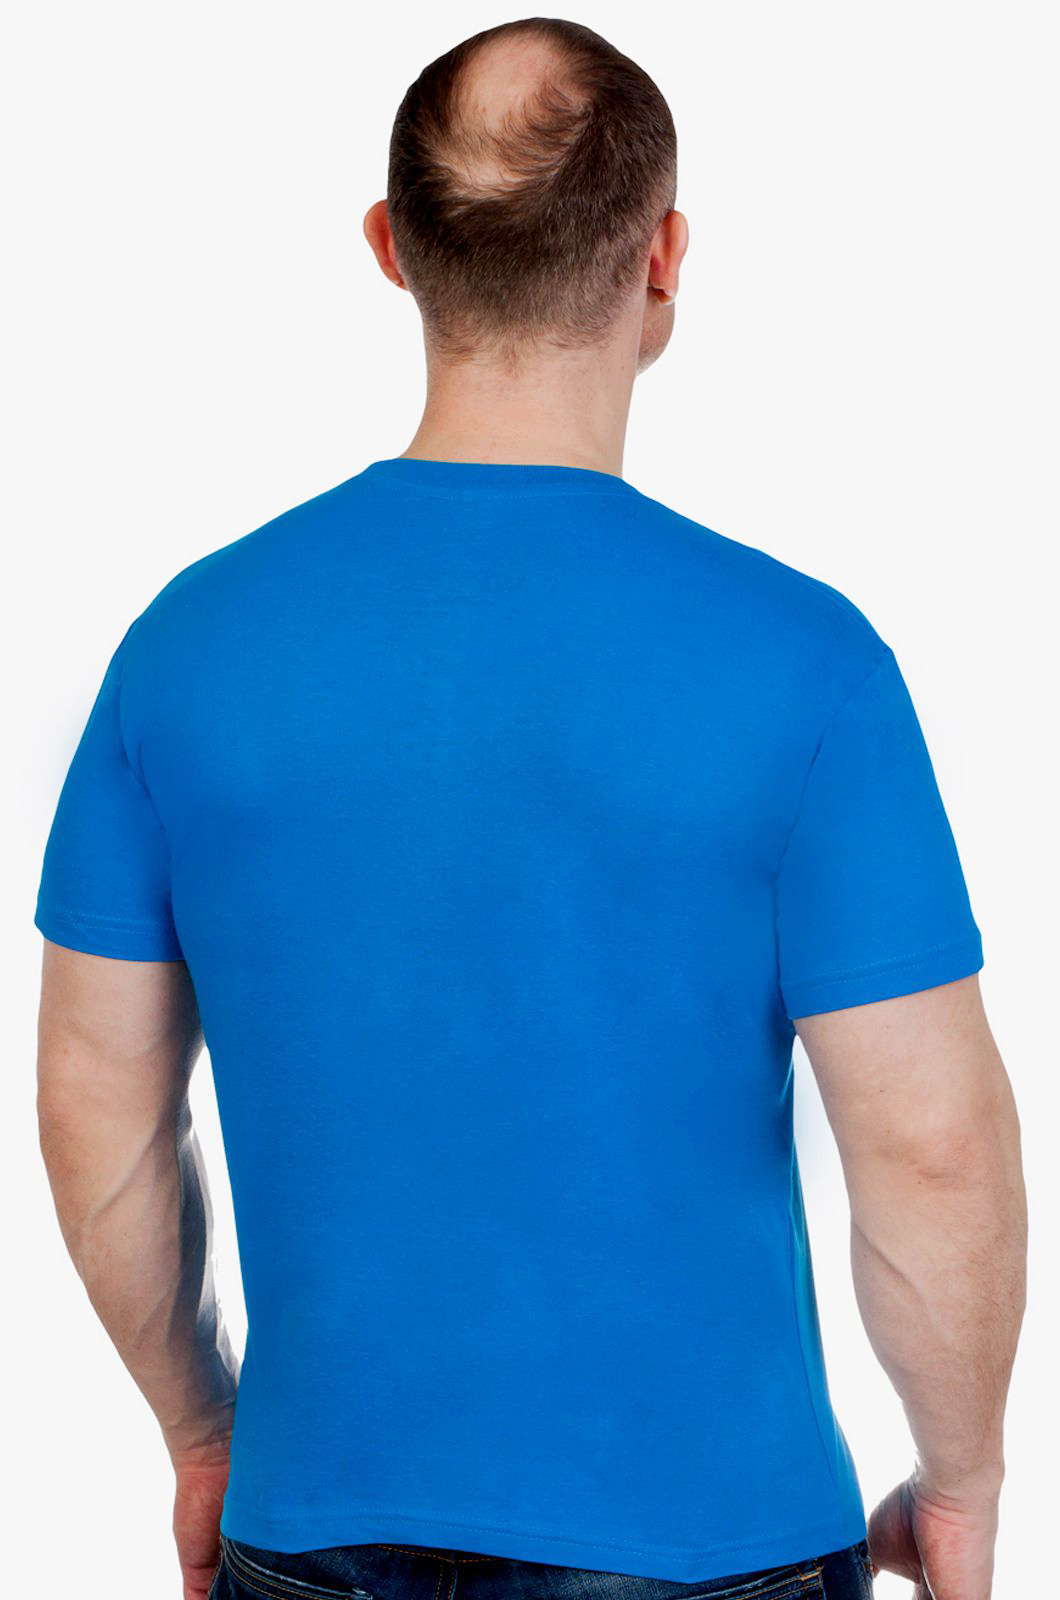 Классная хлопковая футболка ВМФ - купить оптом или в розницу